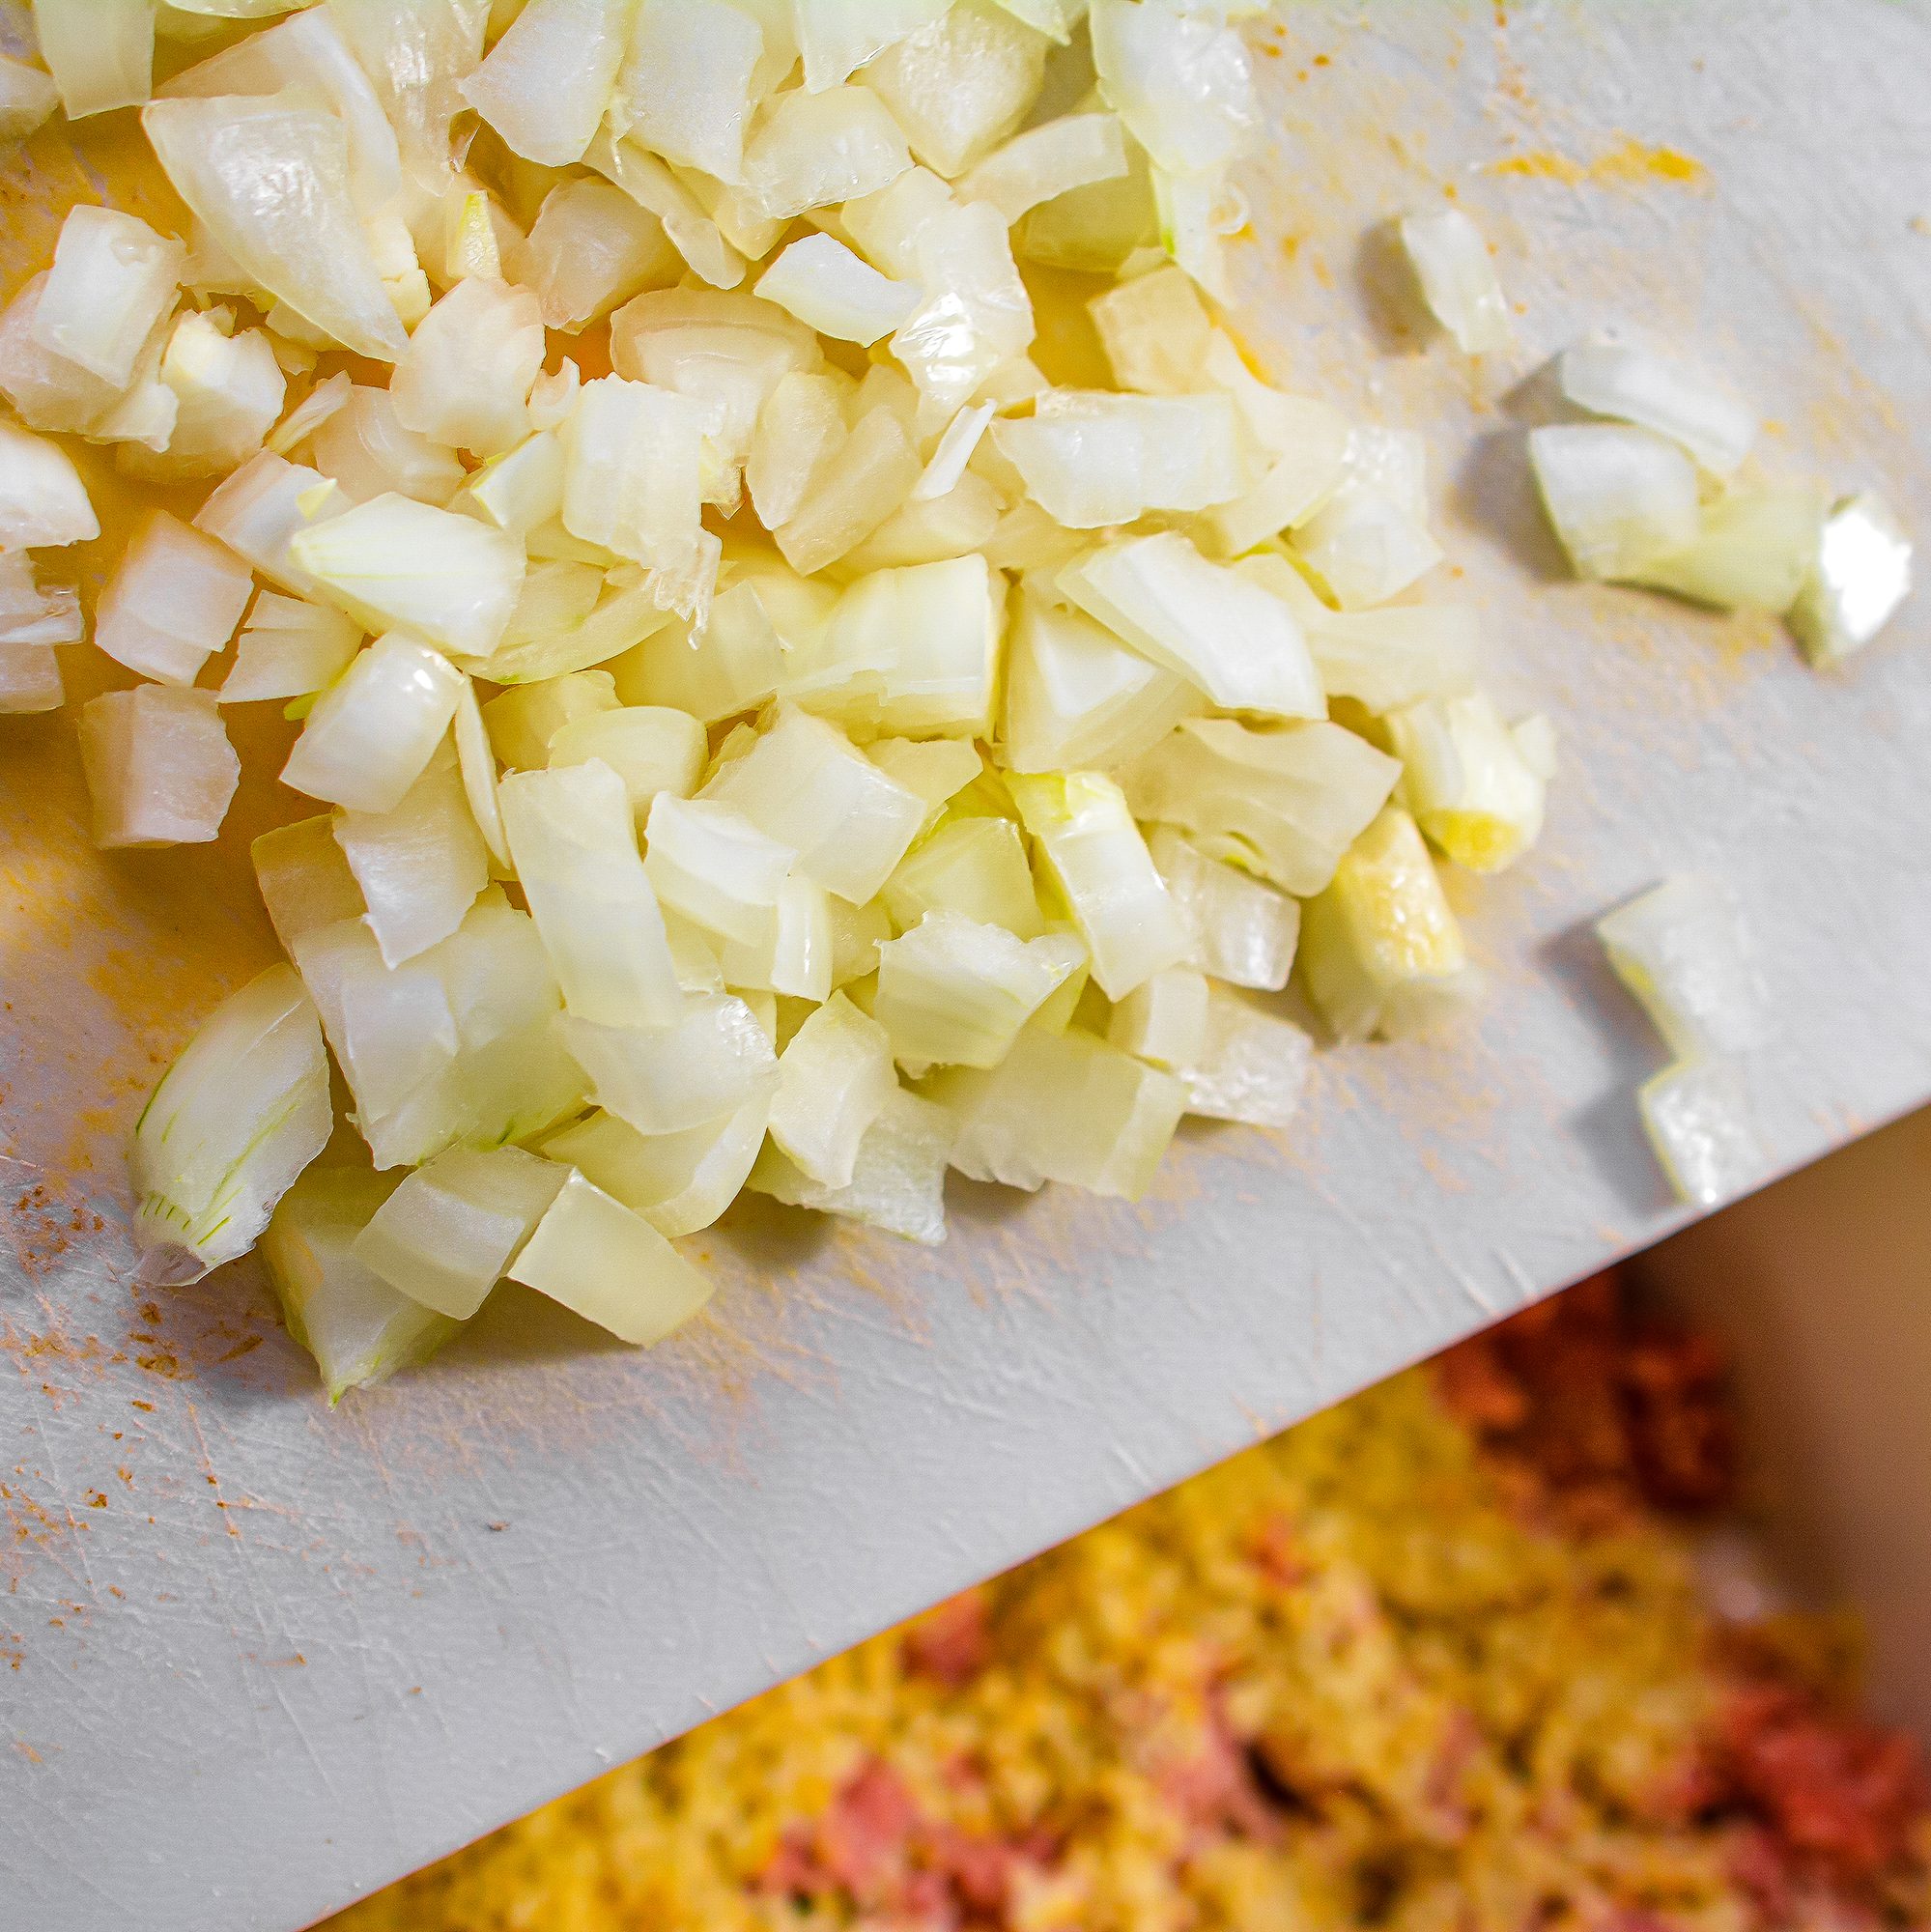 add 1 small onion finely chopped.